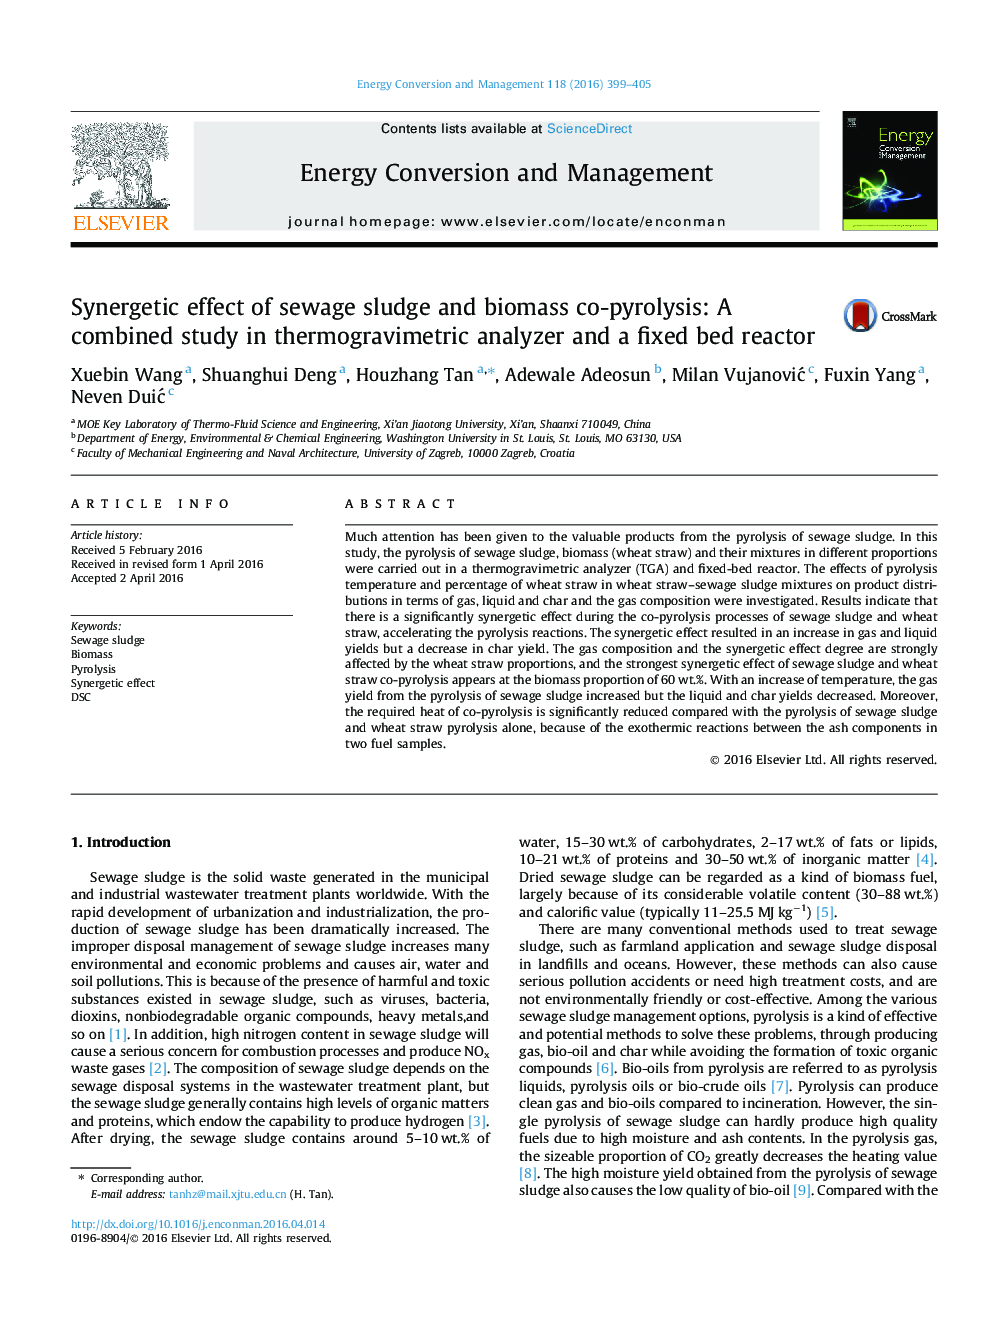 اثر متقابل لجن فاضلاب و زیست توده کپیرولیز: یک مطالعه ترکیبی در تجزیه کننده ترموگرافی و یک رآکتور بستر ثابت 